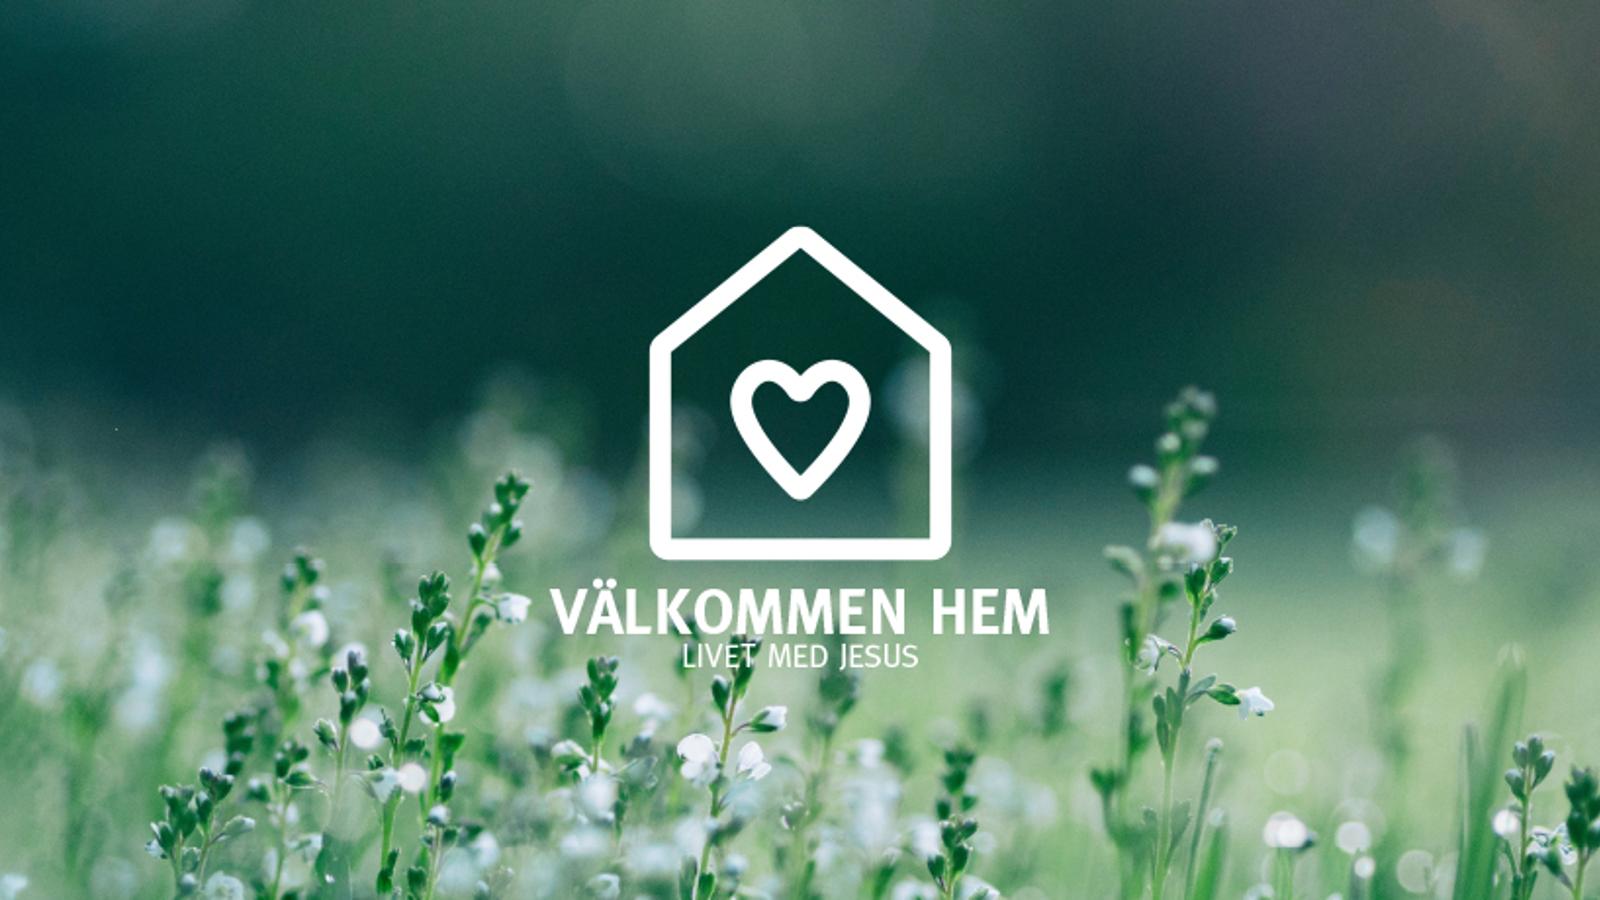 En logotyp i form av ett hus med ett hjärta på, med texten "Välkommen hem. Livet med Jesus". I bakgrunden syns ett fält med vita blommor.